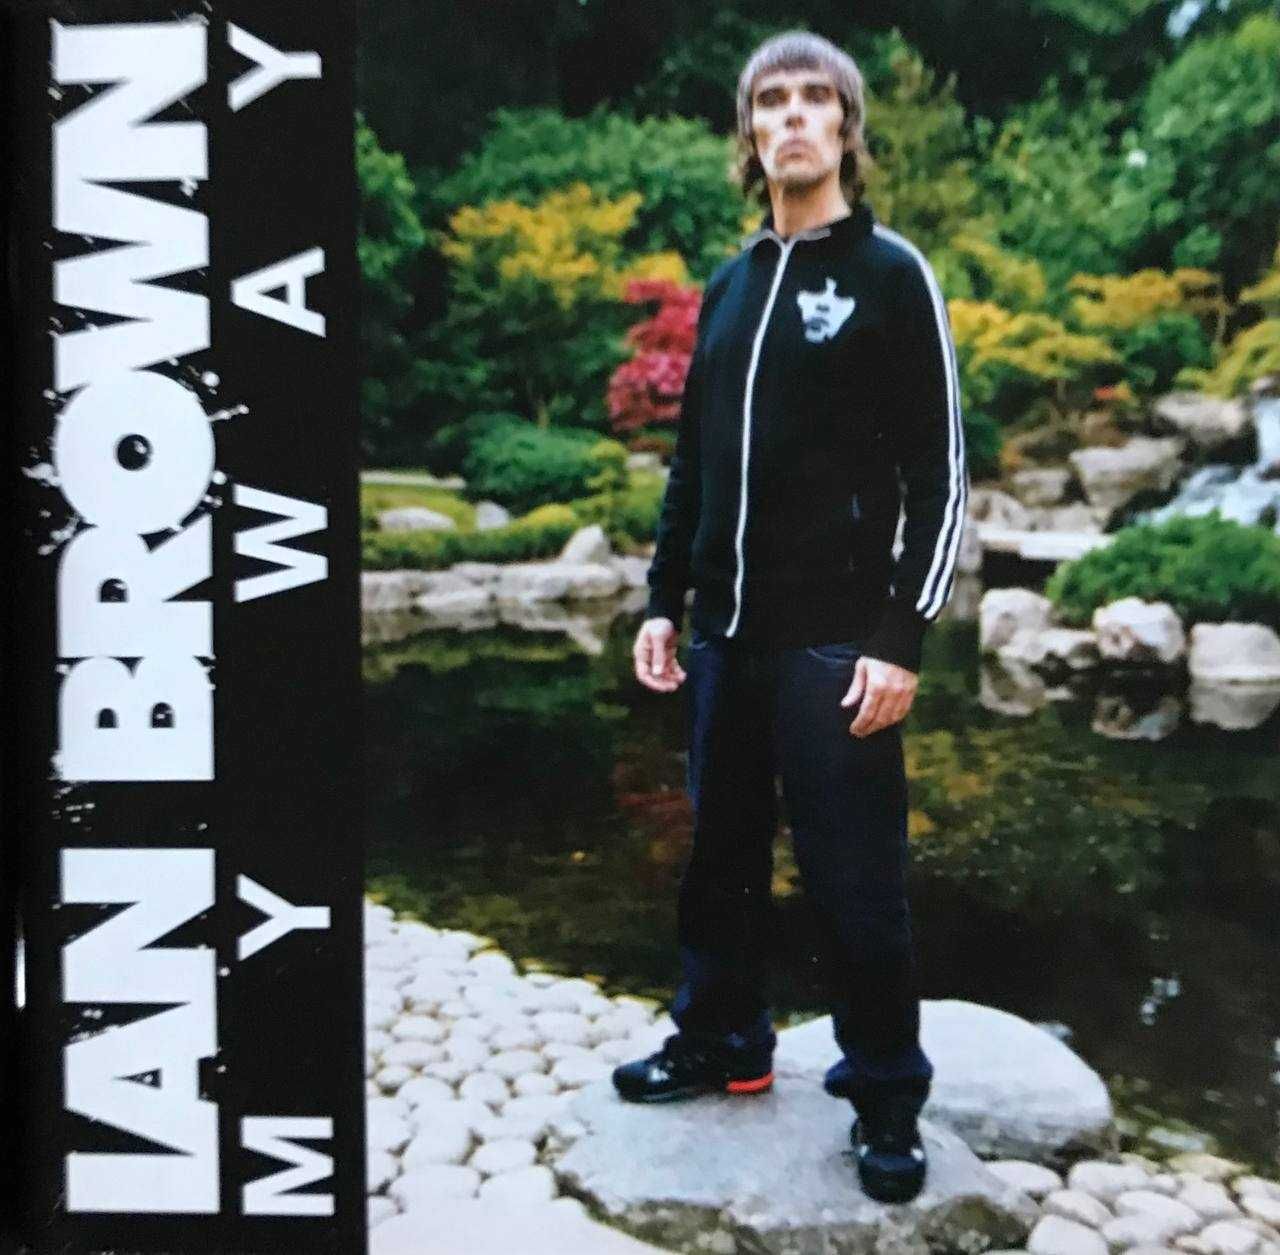 Brown, Ian – My Way (2009, Germany)